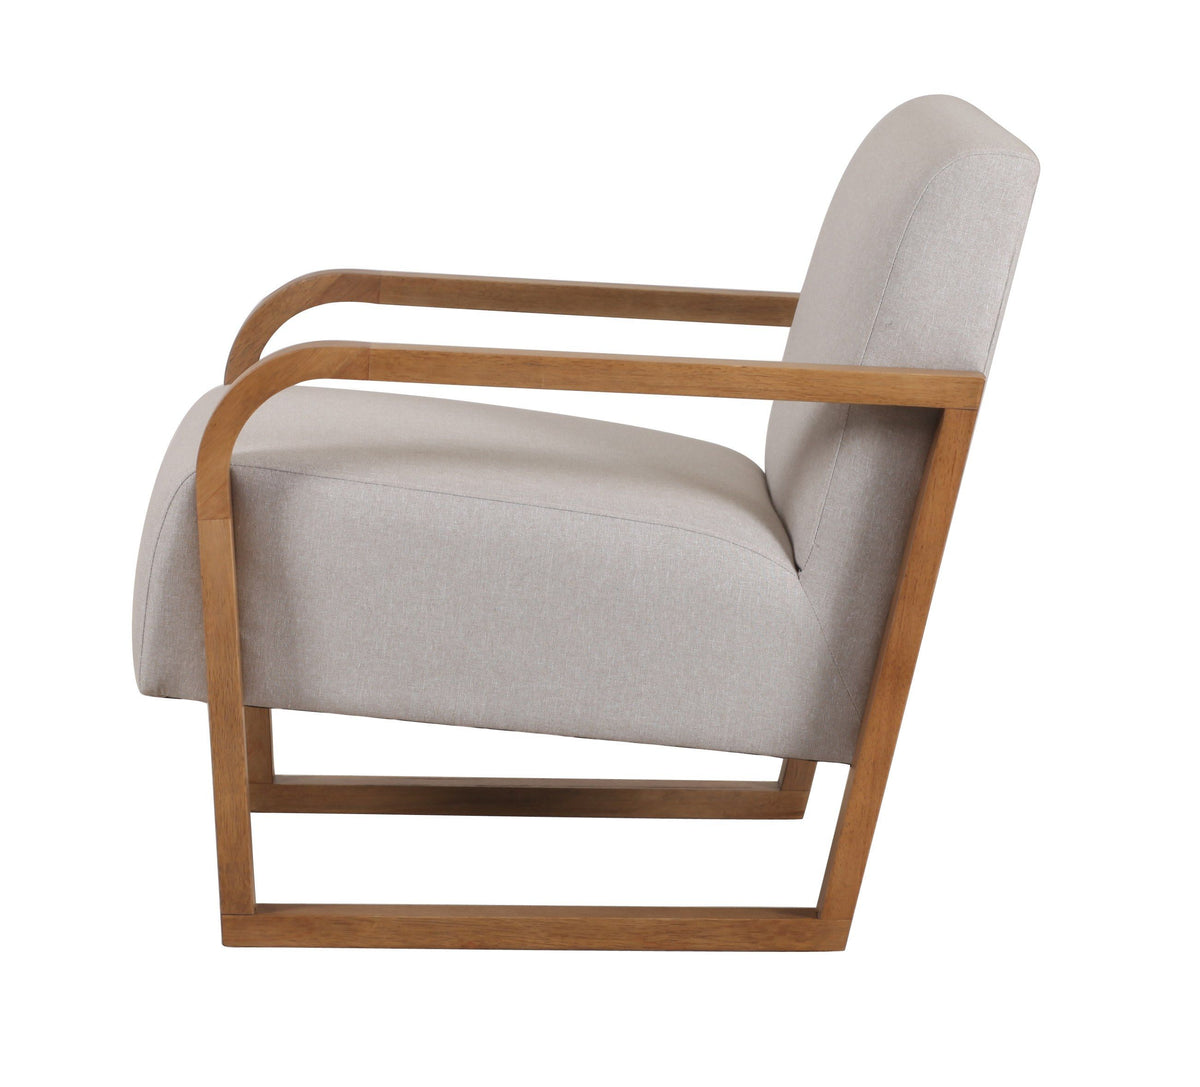 Vasser Mid-Century Modern Beige Linen + Chestnut Accent Chair